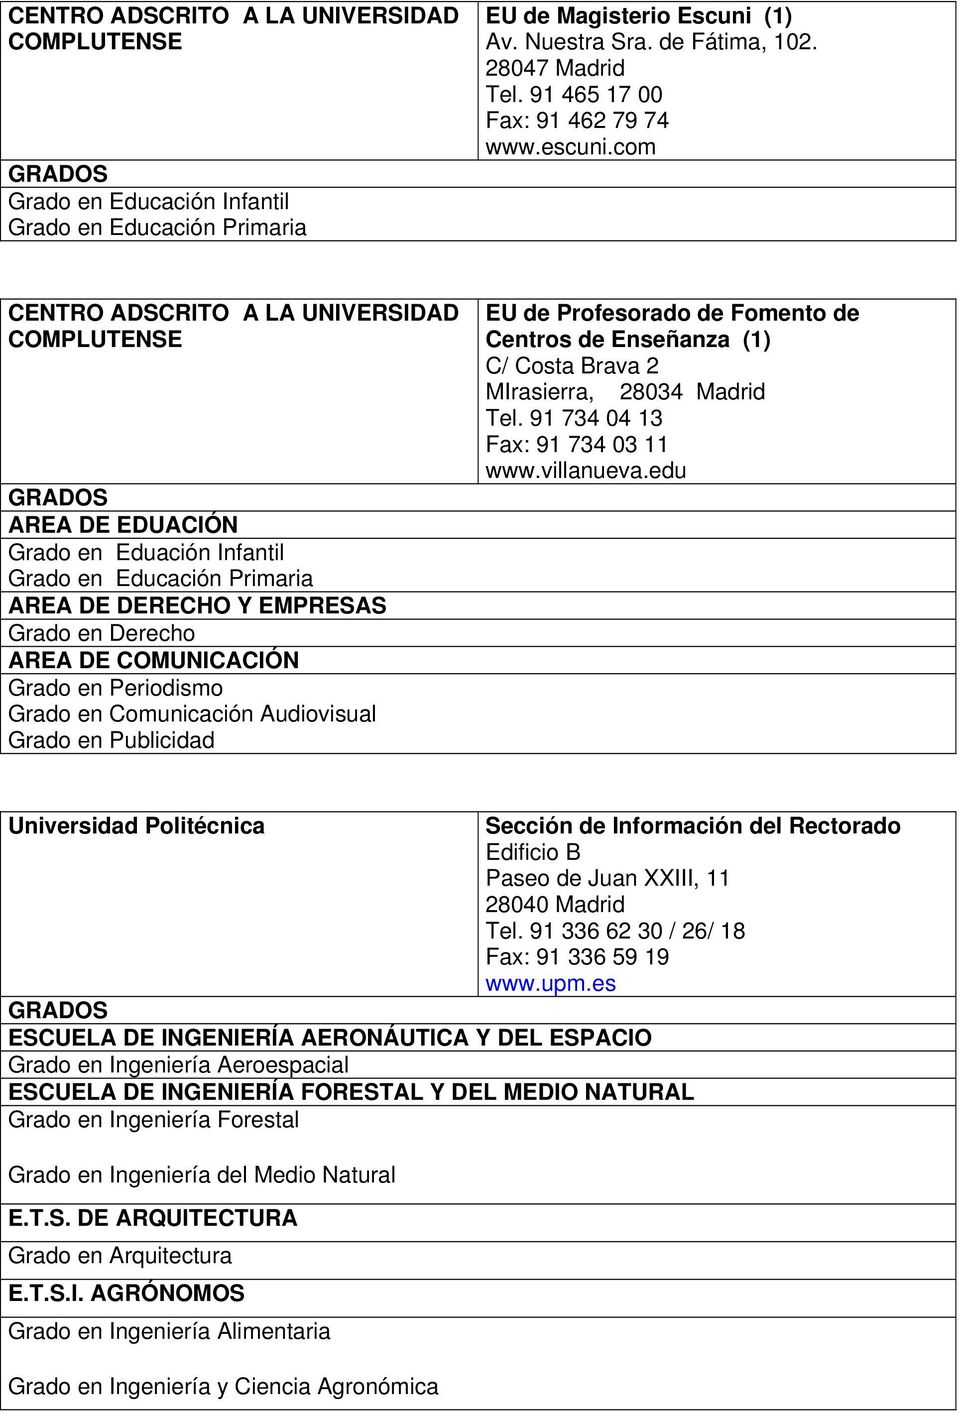 Grado en Publicidad EU de Profesorado de Fomento de Centros de Enseñanza (1) C/ Costa Brava 2 MIrasierra, 28034 Madrid Tel. 91 734 04 13 Fax: 91 734 03 11 www.villanueva.